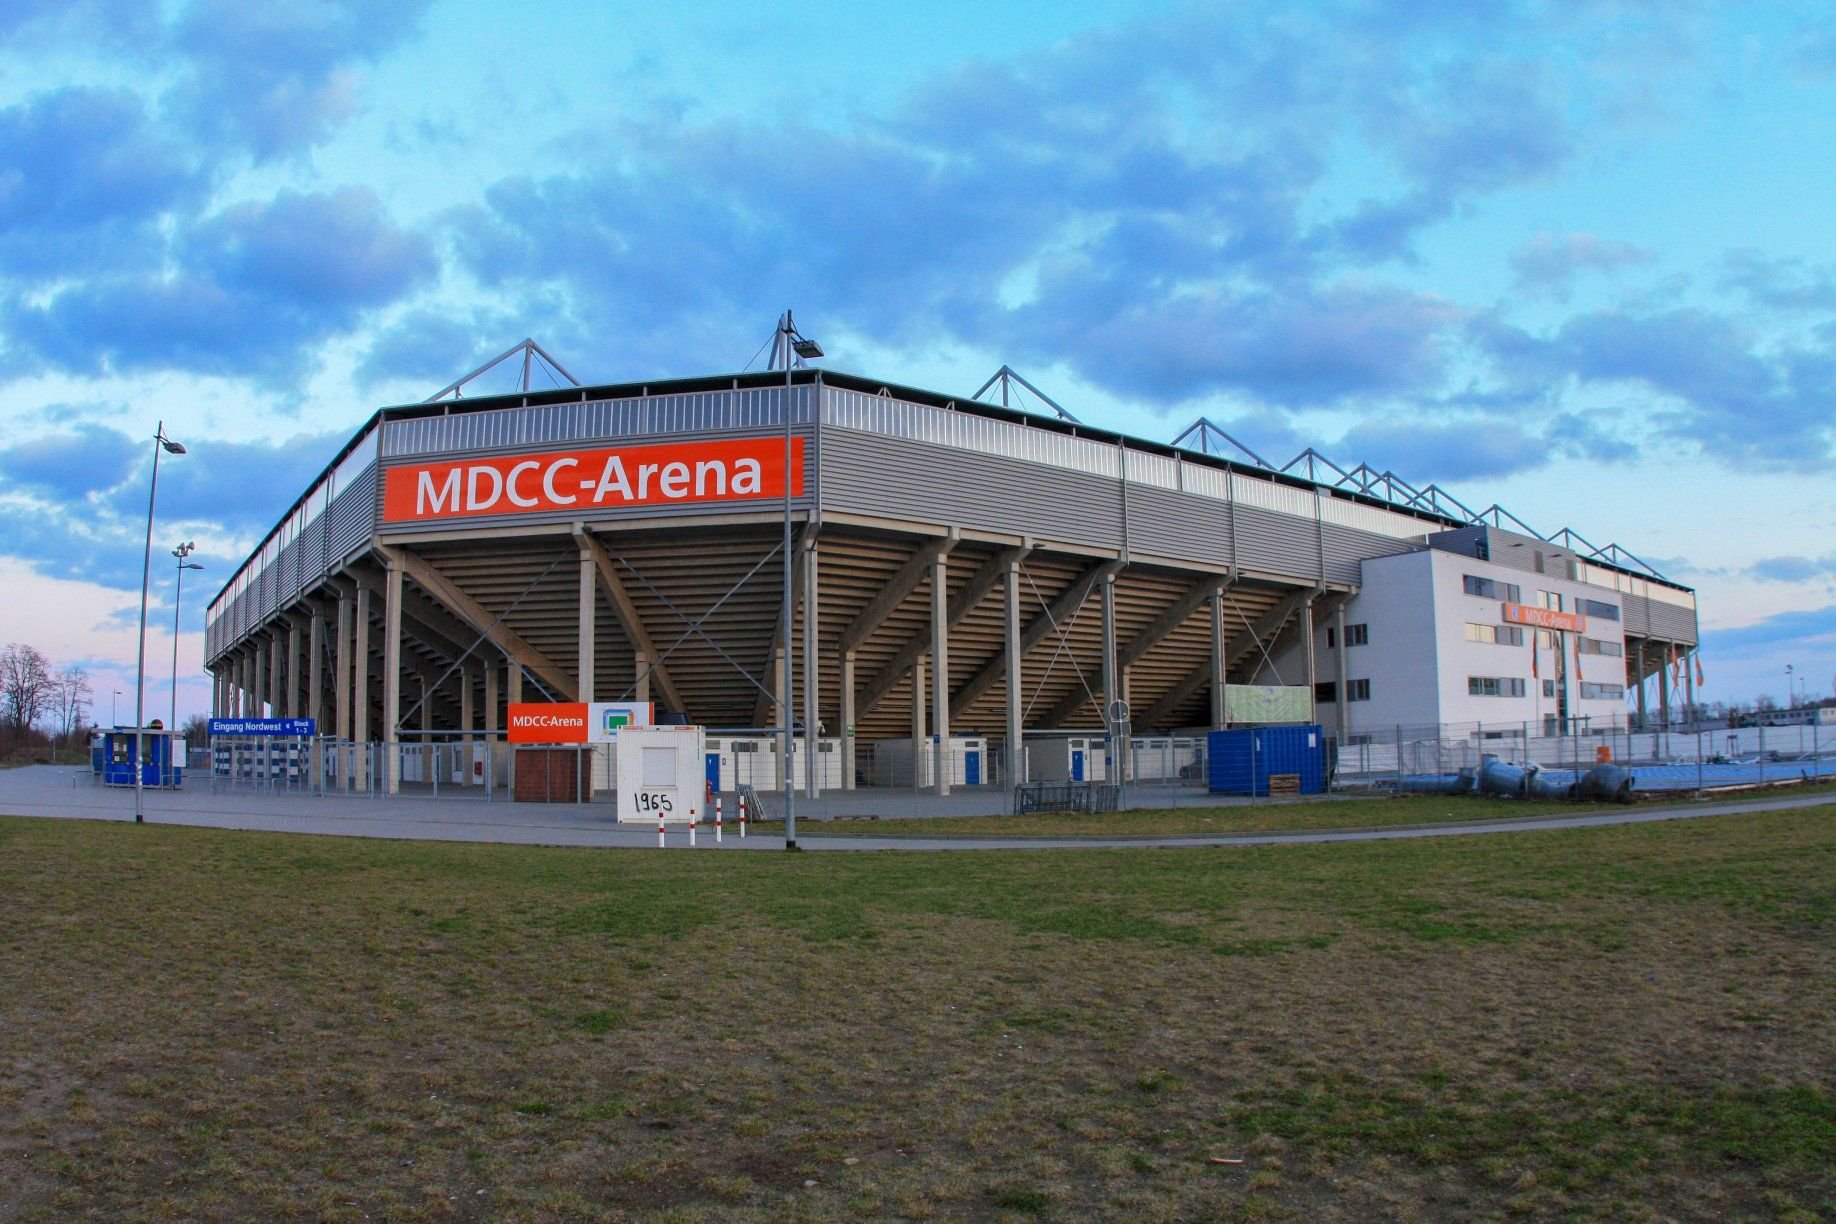 1. FCM Stadion - MDCC Arena